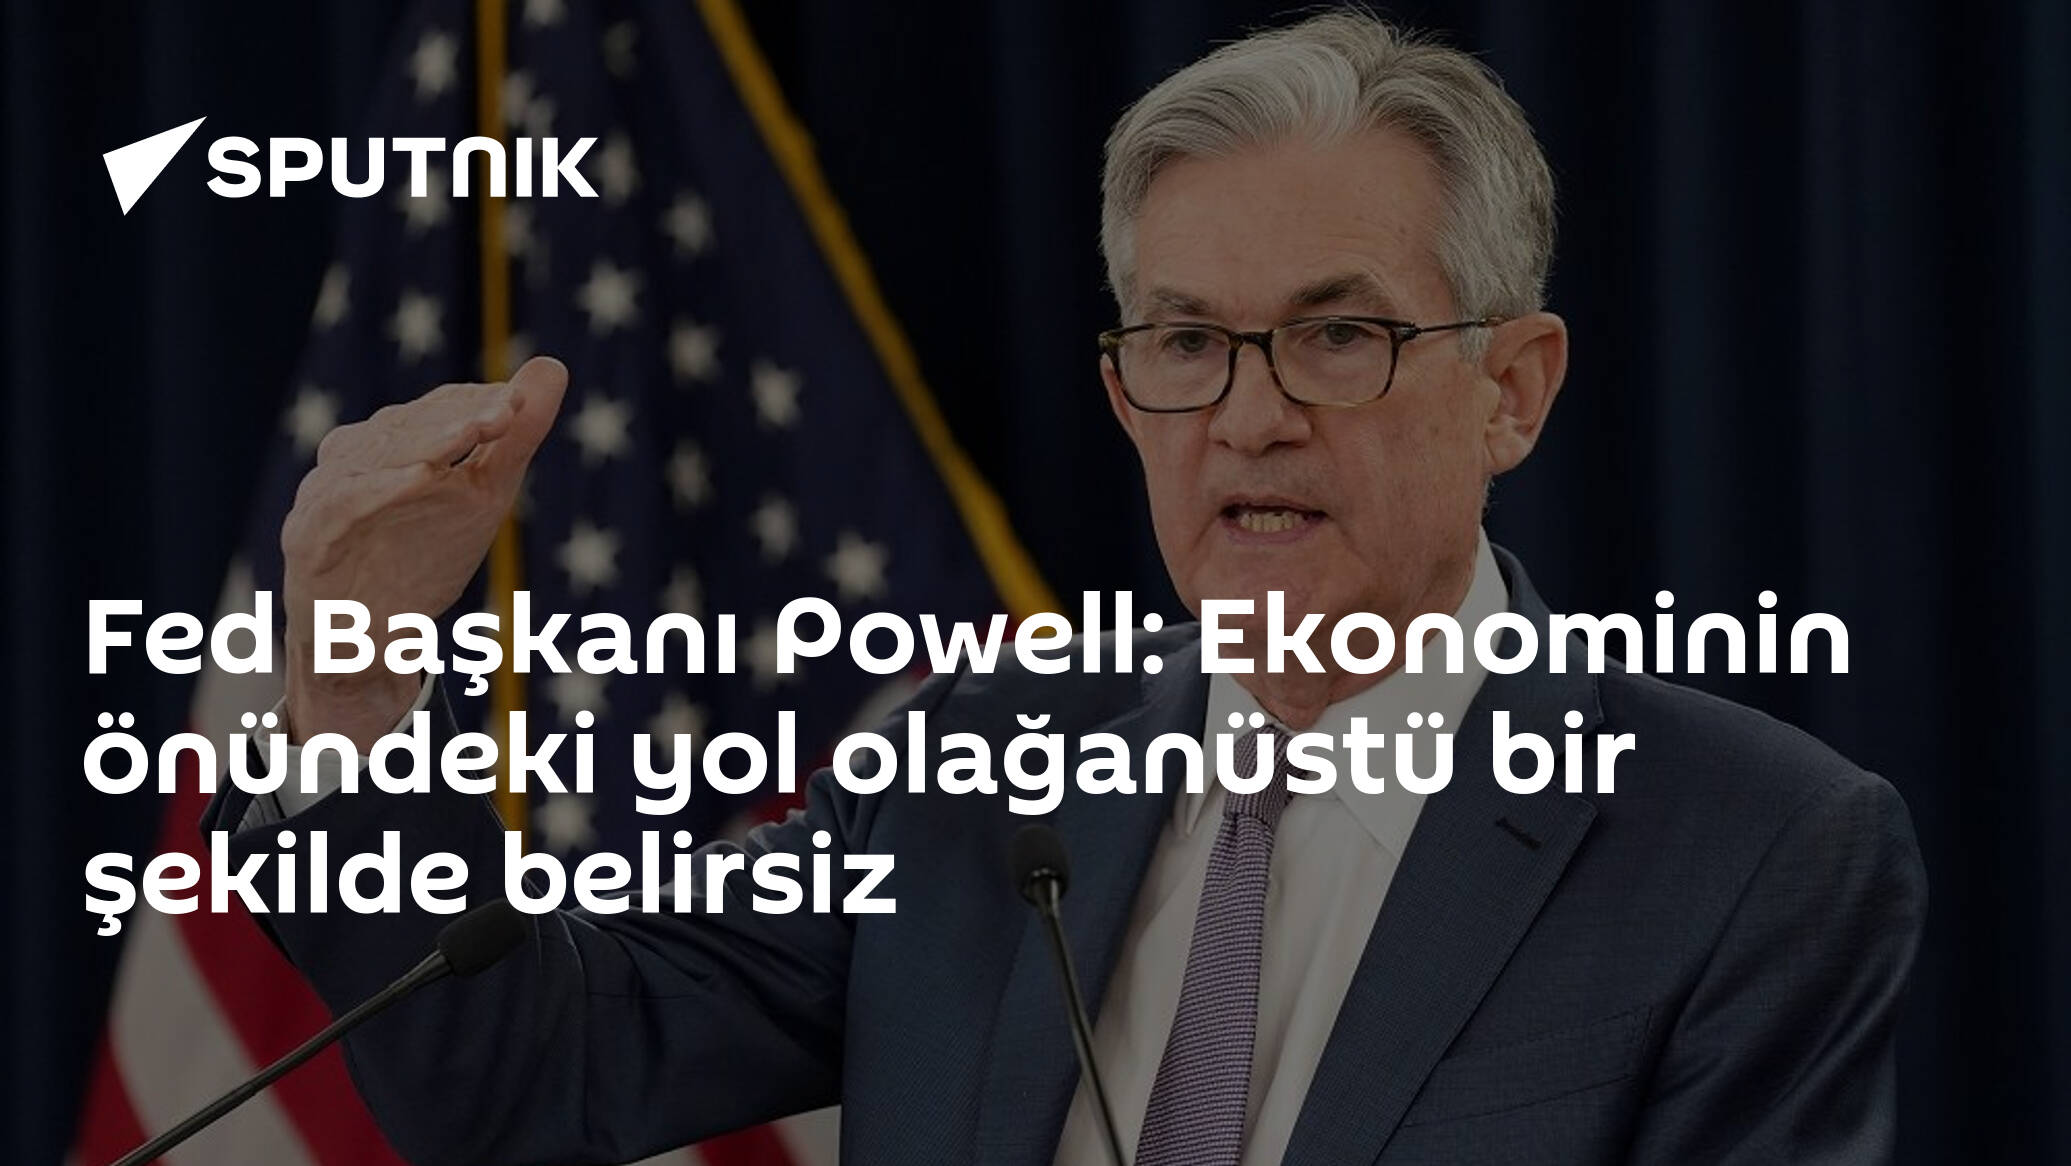 Fed Başkanı Powell: Ekonominin önündeki yol olağanüstü bir şekilde belirsiz